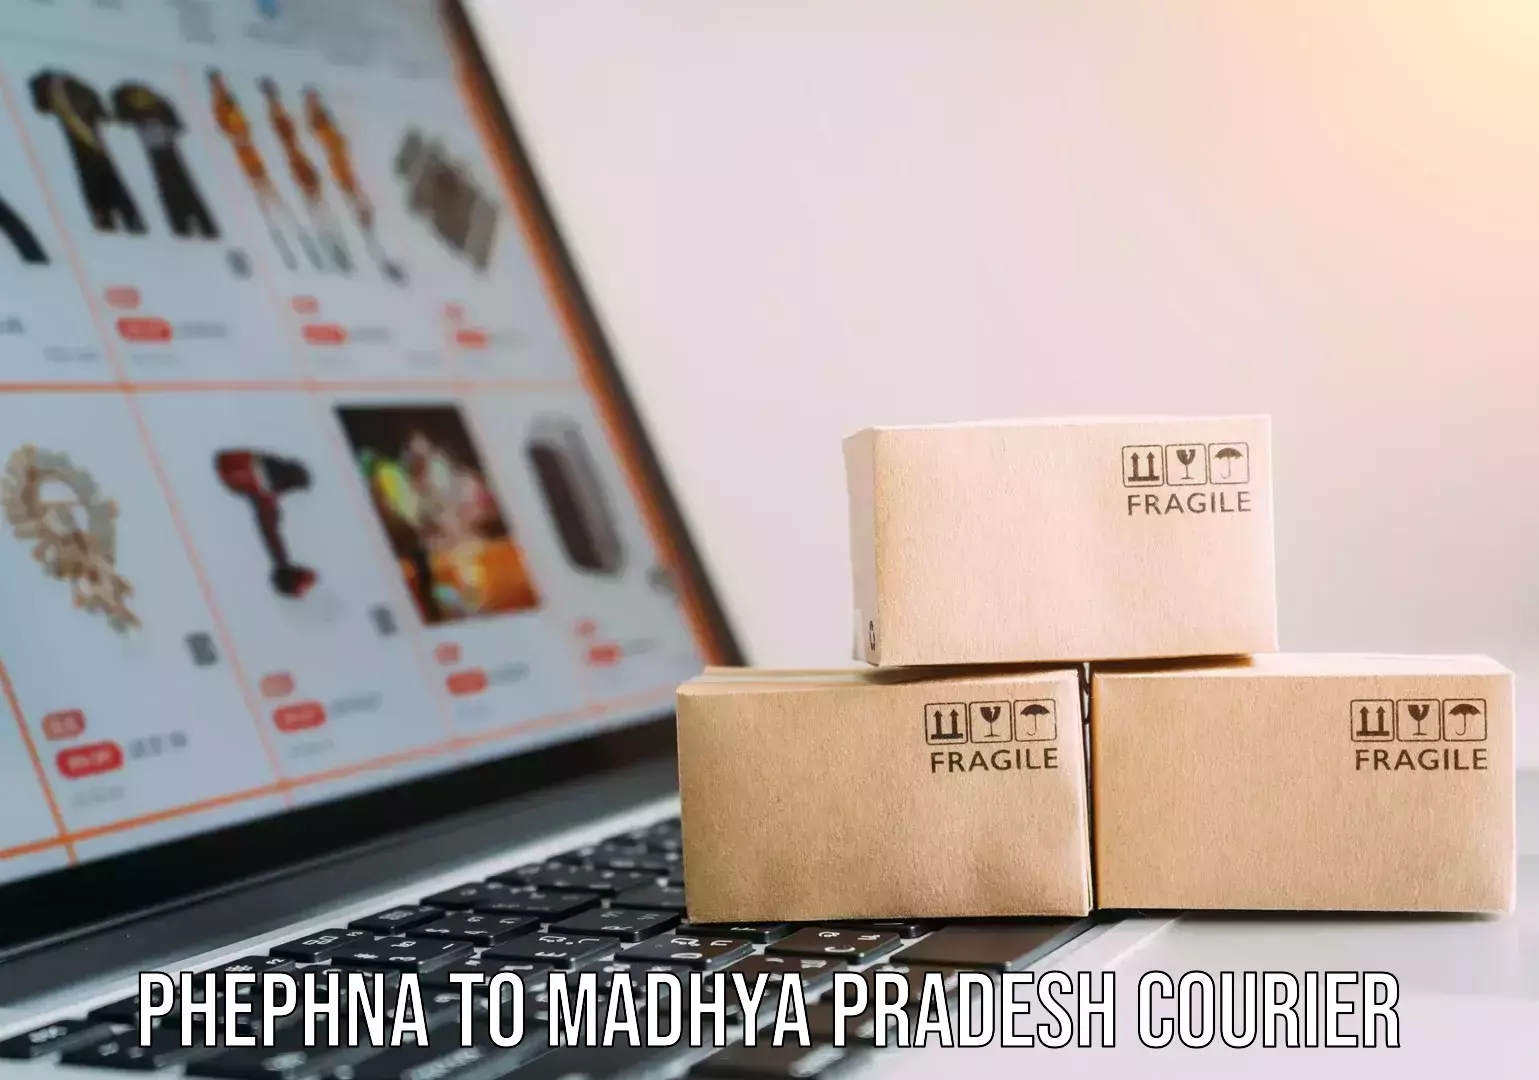 Furniture moving experts Phephna to Madhya Pradesh